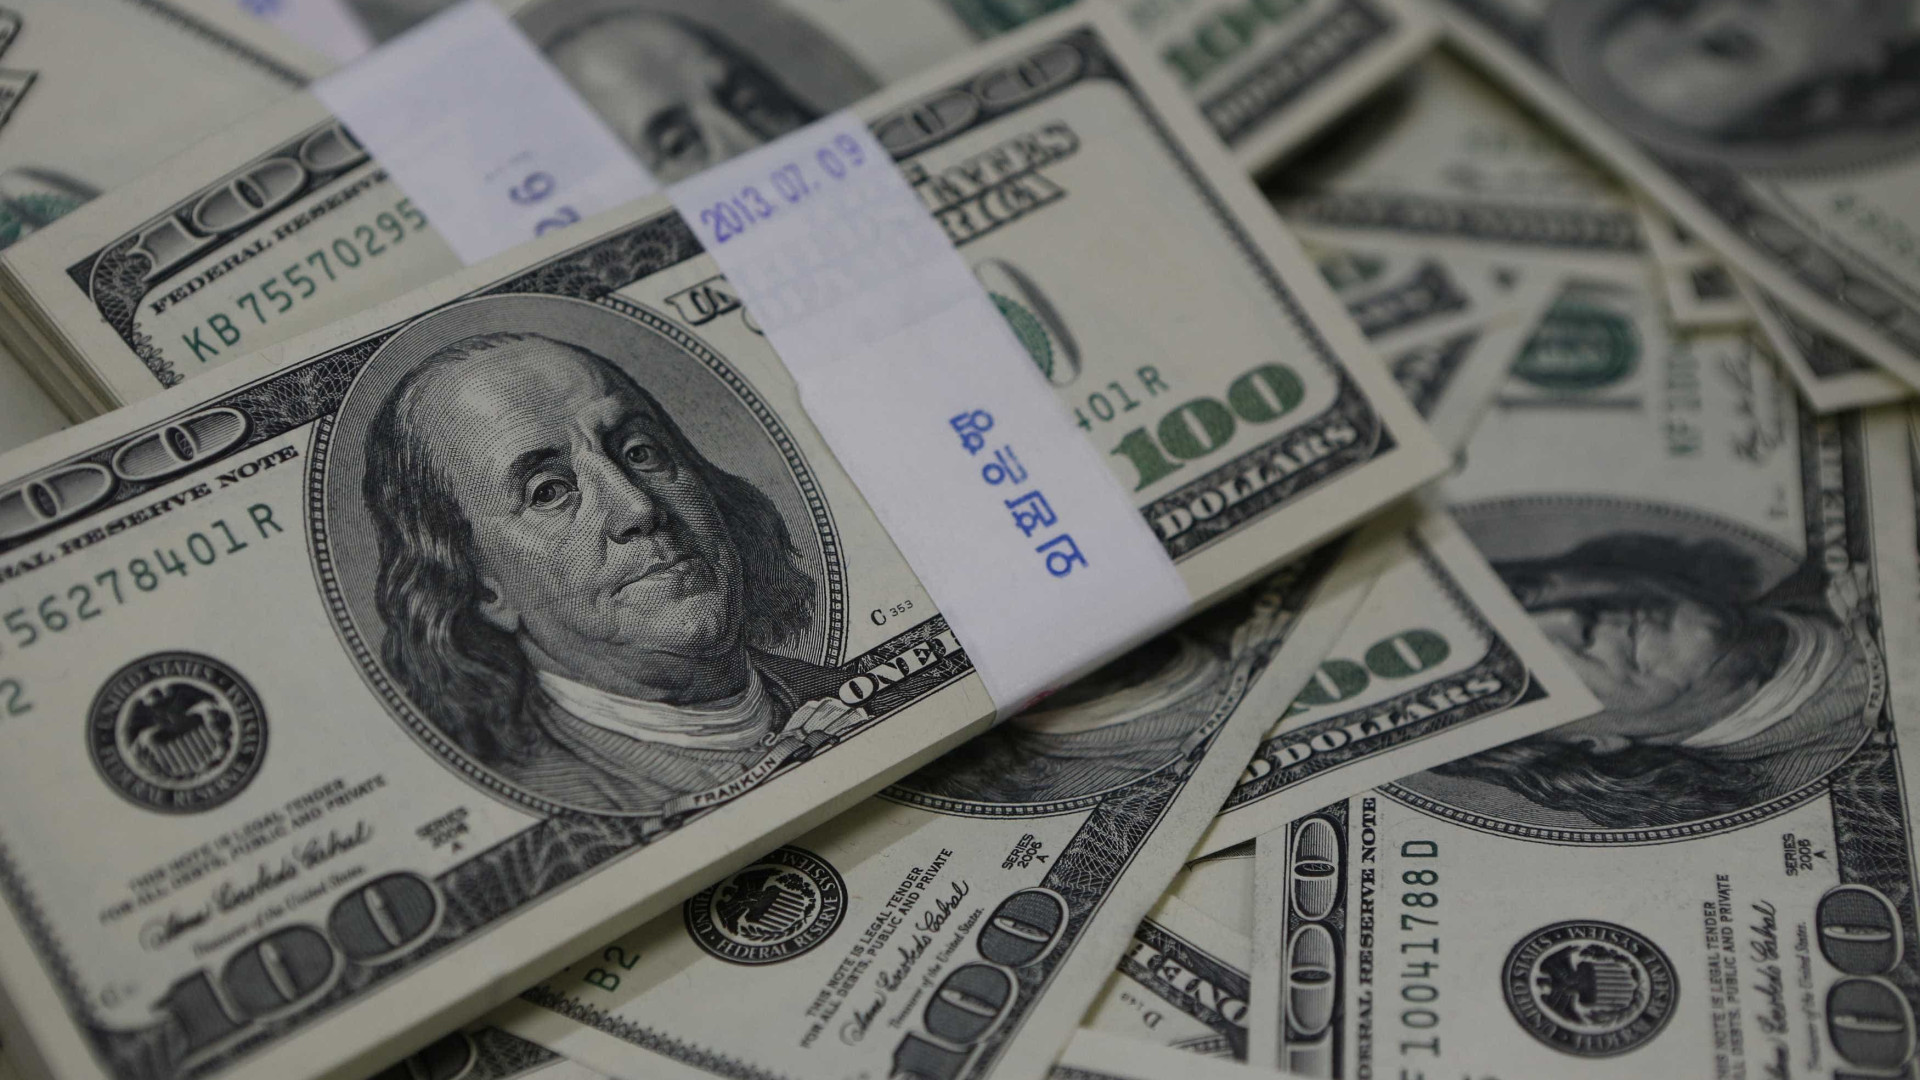 Analistas projetam dólar a R$ 3,30 e 
elevam taxa de juros para 2016